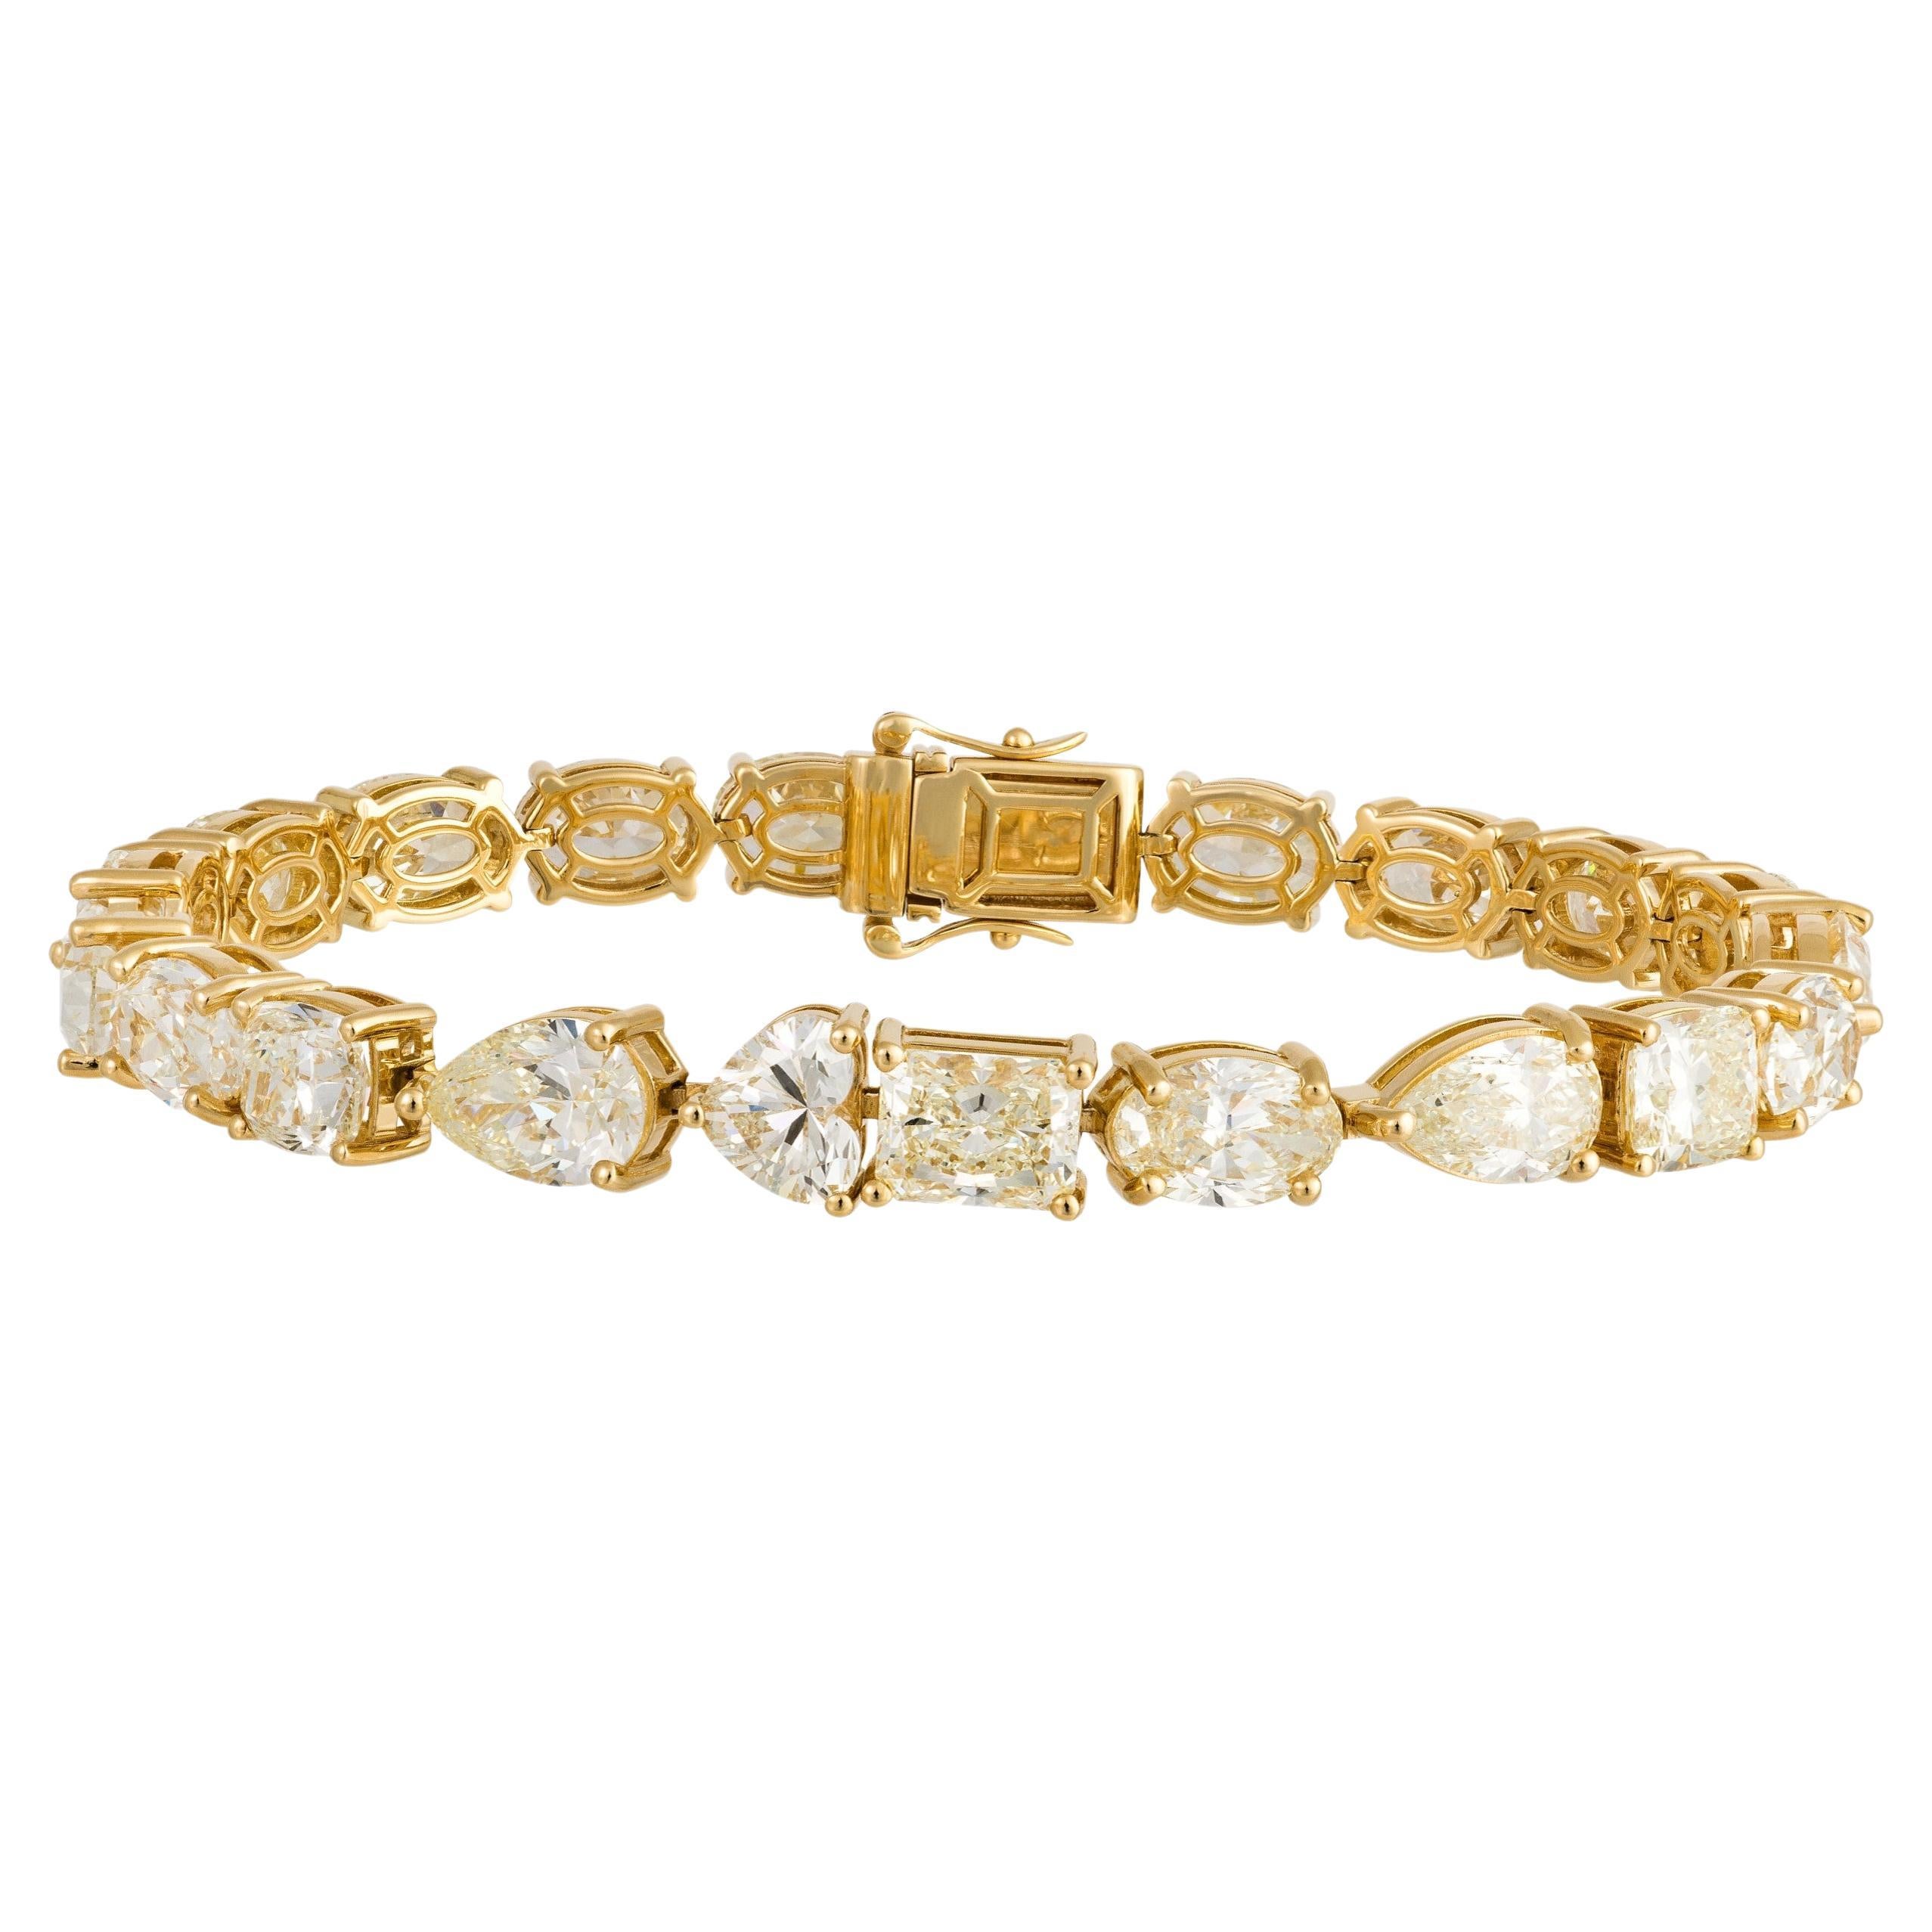 Magnifique bracelet tennis rare 18 carats avec diamant jaune 23 carats, 250 000 $, nouveau avec étiquette